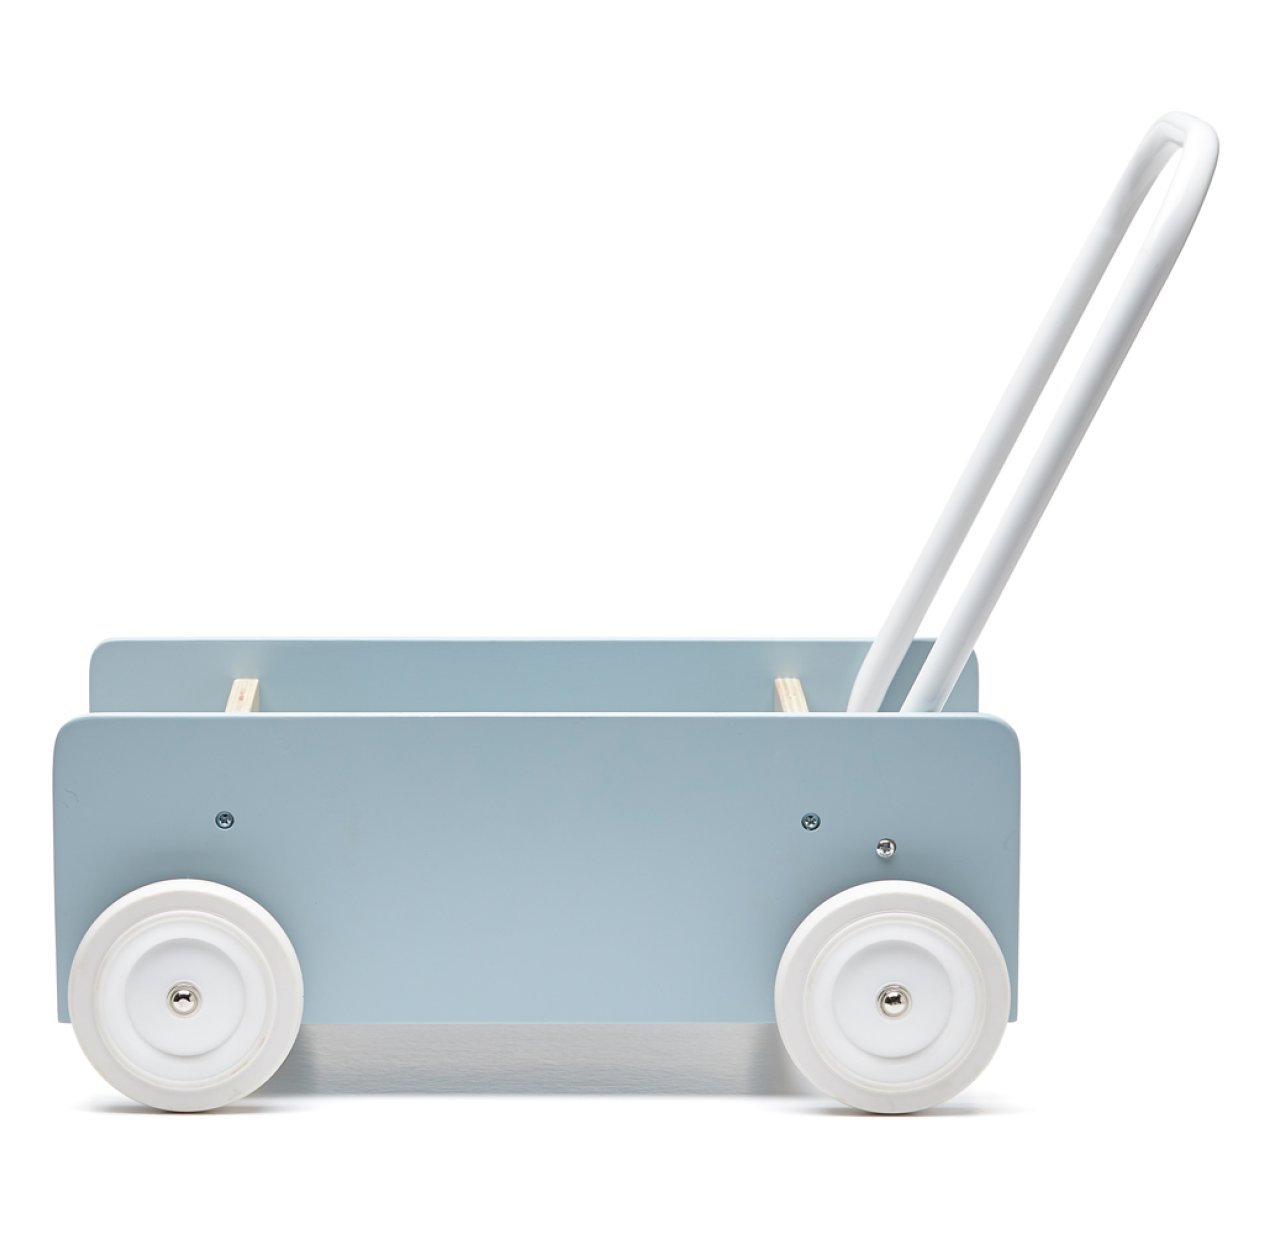 Chariot poussette en bois - Bleu gris Kid's Concept pour chambre enfant -  Les Enfants du Design